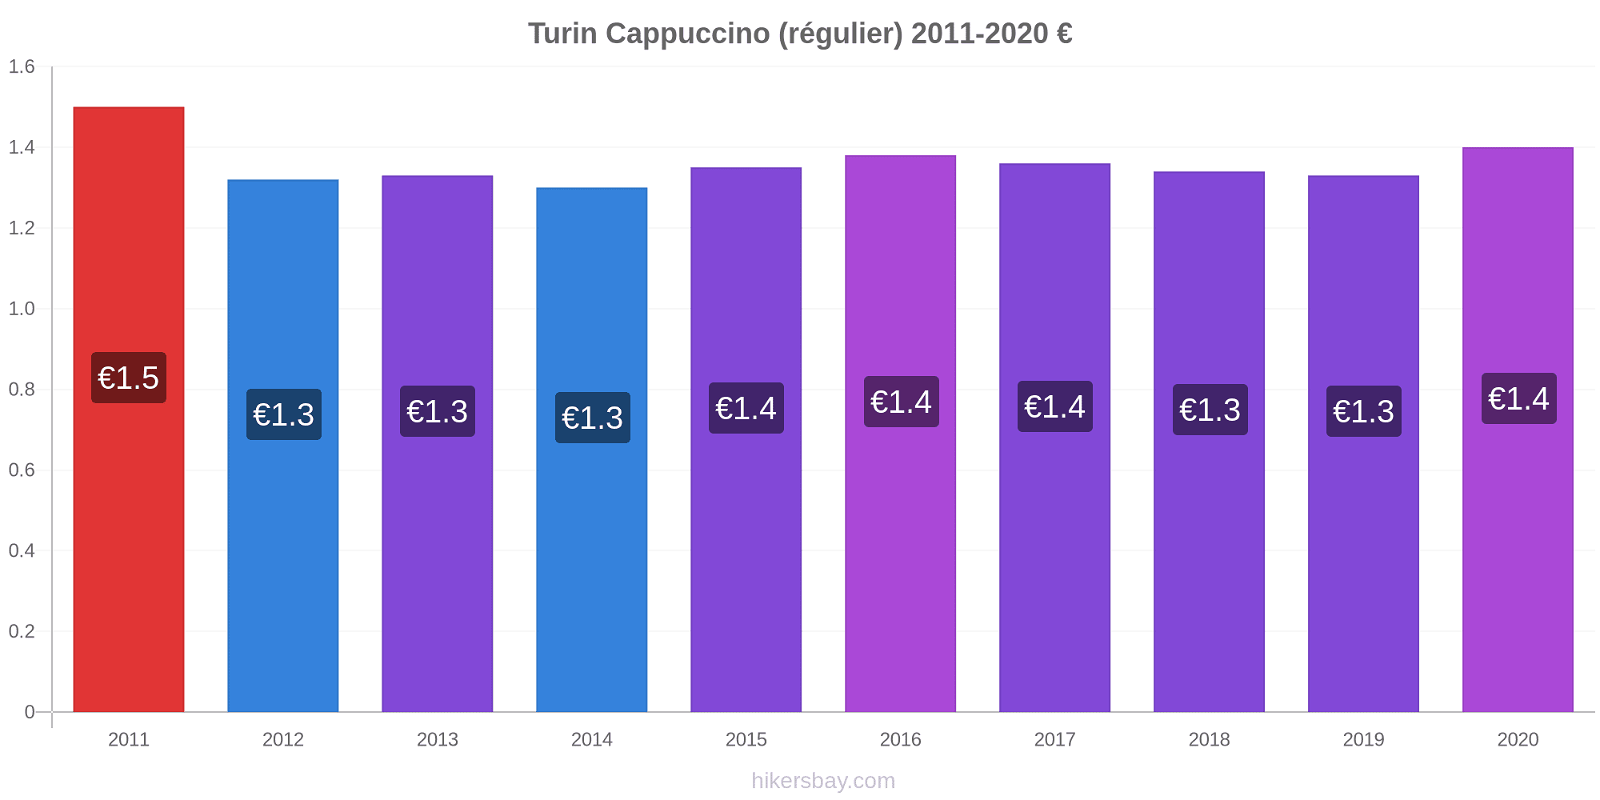 Turin changements de prix Cappuccino (régulier) hikersbay.com